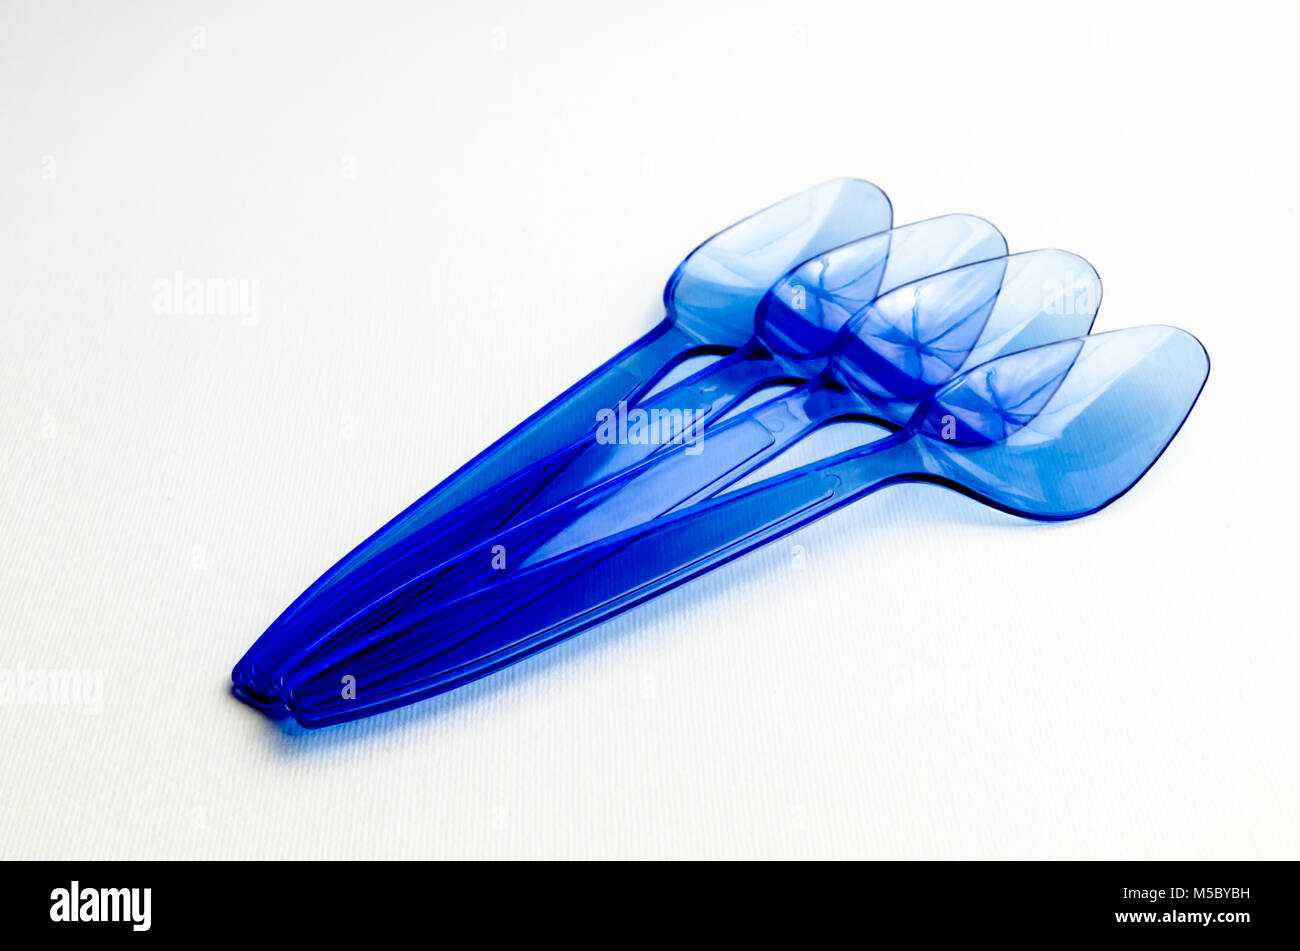 Un estudio Fotografía de cucharas de plástico azul Foto de stock